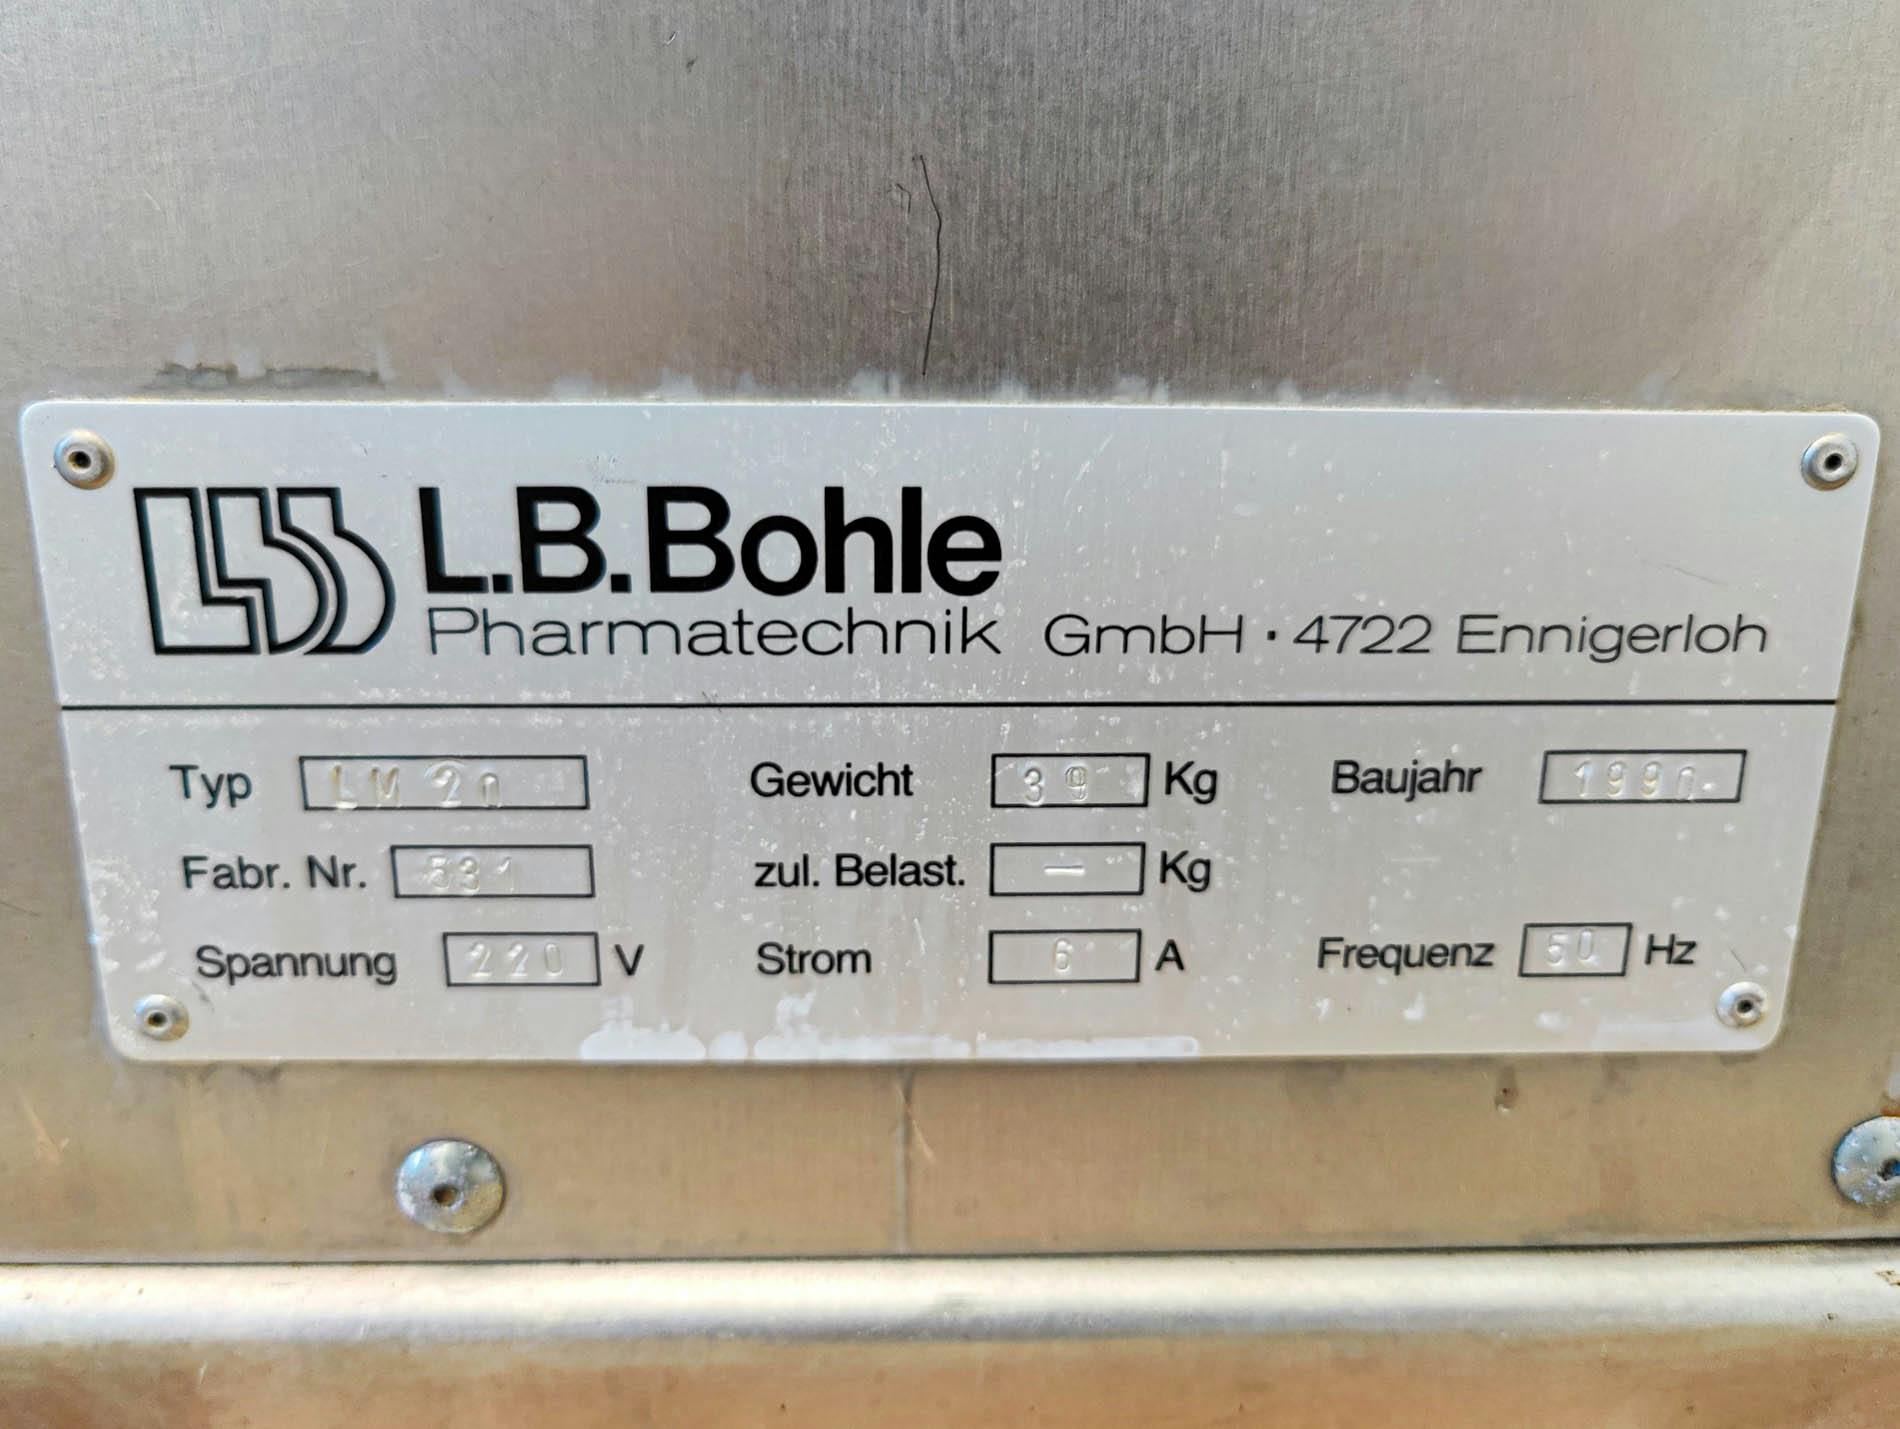 LB Bohle LM-20 - Tumbler mixer - image 11